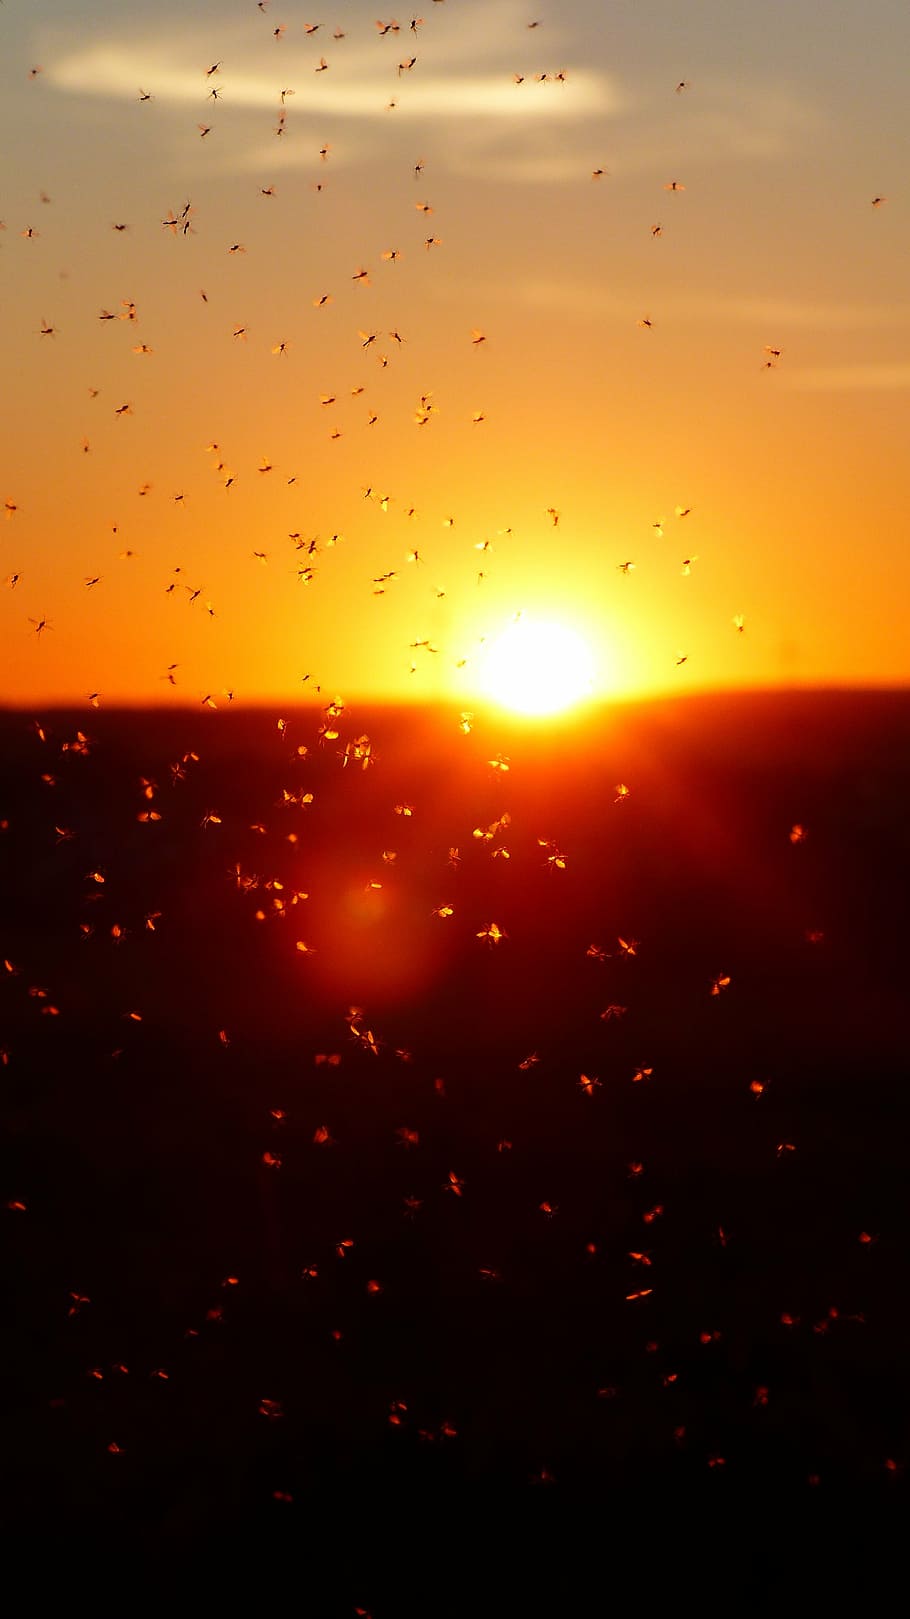 enjambre, mosca, selectivo, fotografía de enfoque, más soleado, enjambre de mosquitos, mosquitos, moscas cálidas, luz de fondo, insectos